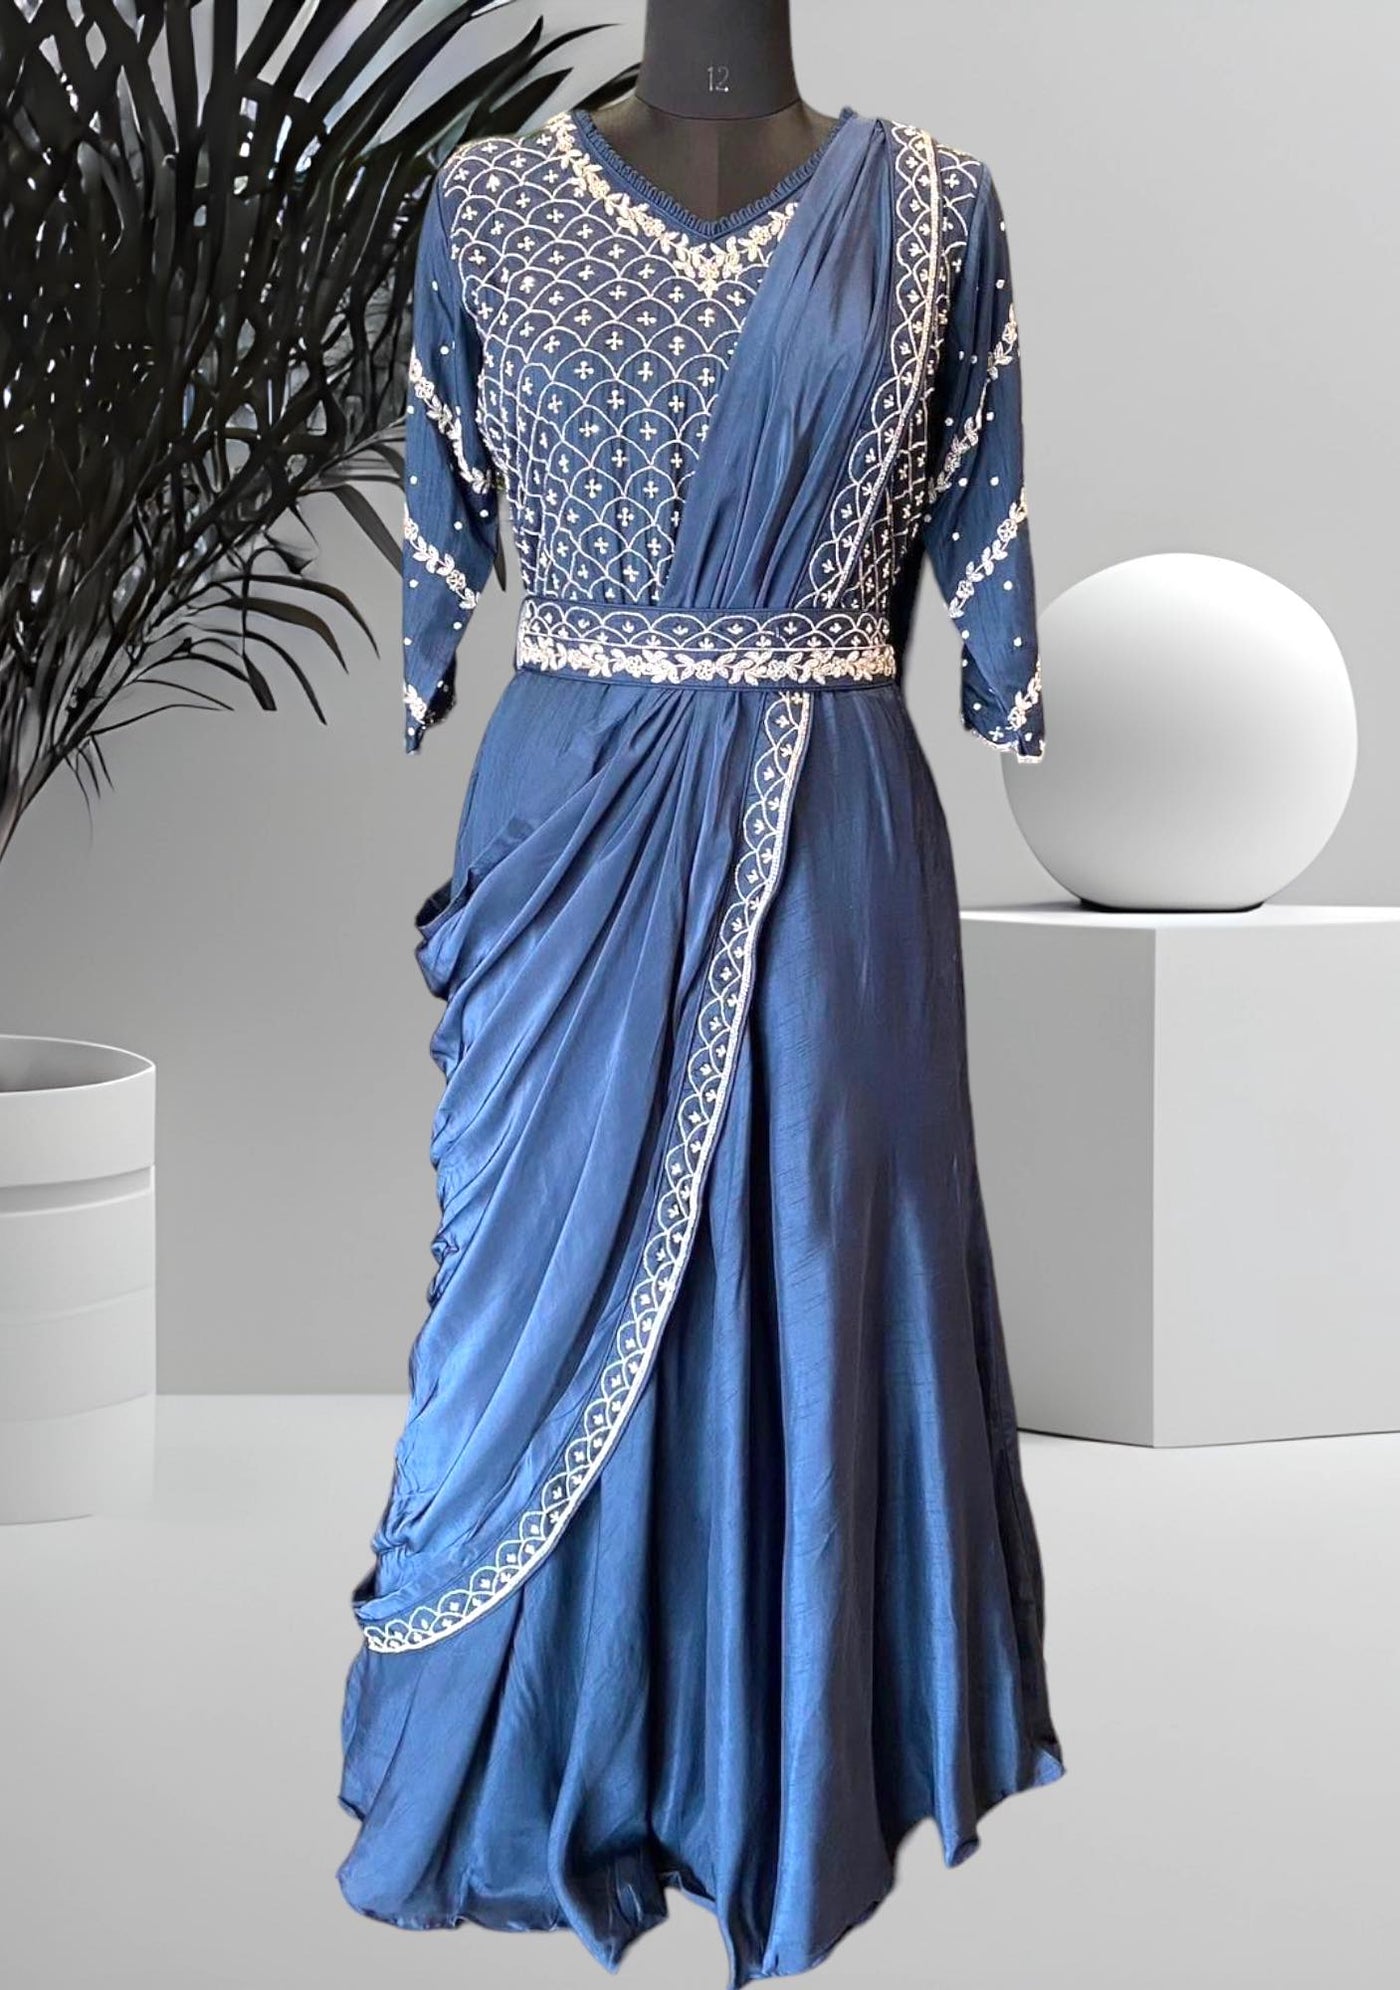 Latest Silk gown design ideas 2021 || Saree pattern long gown dress design  || Long gown designs - YouTube